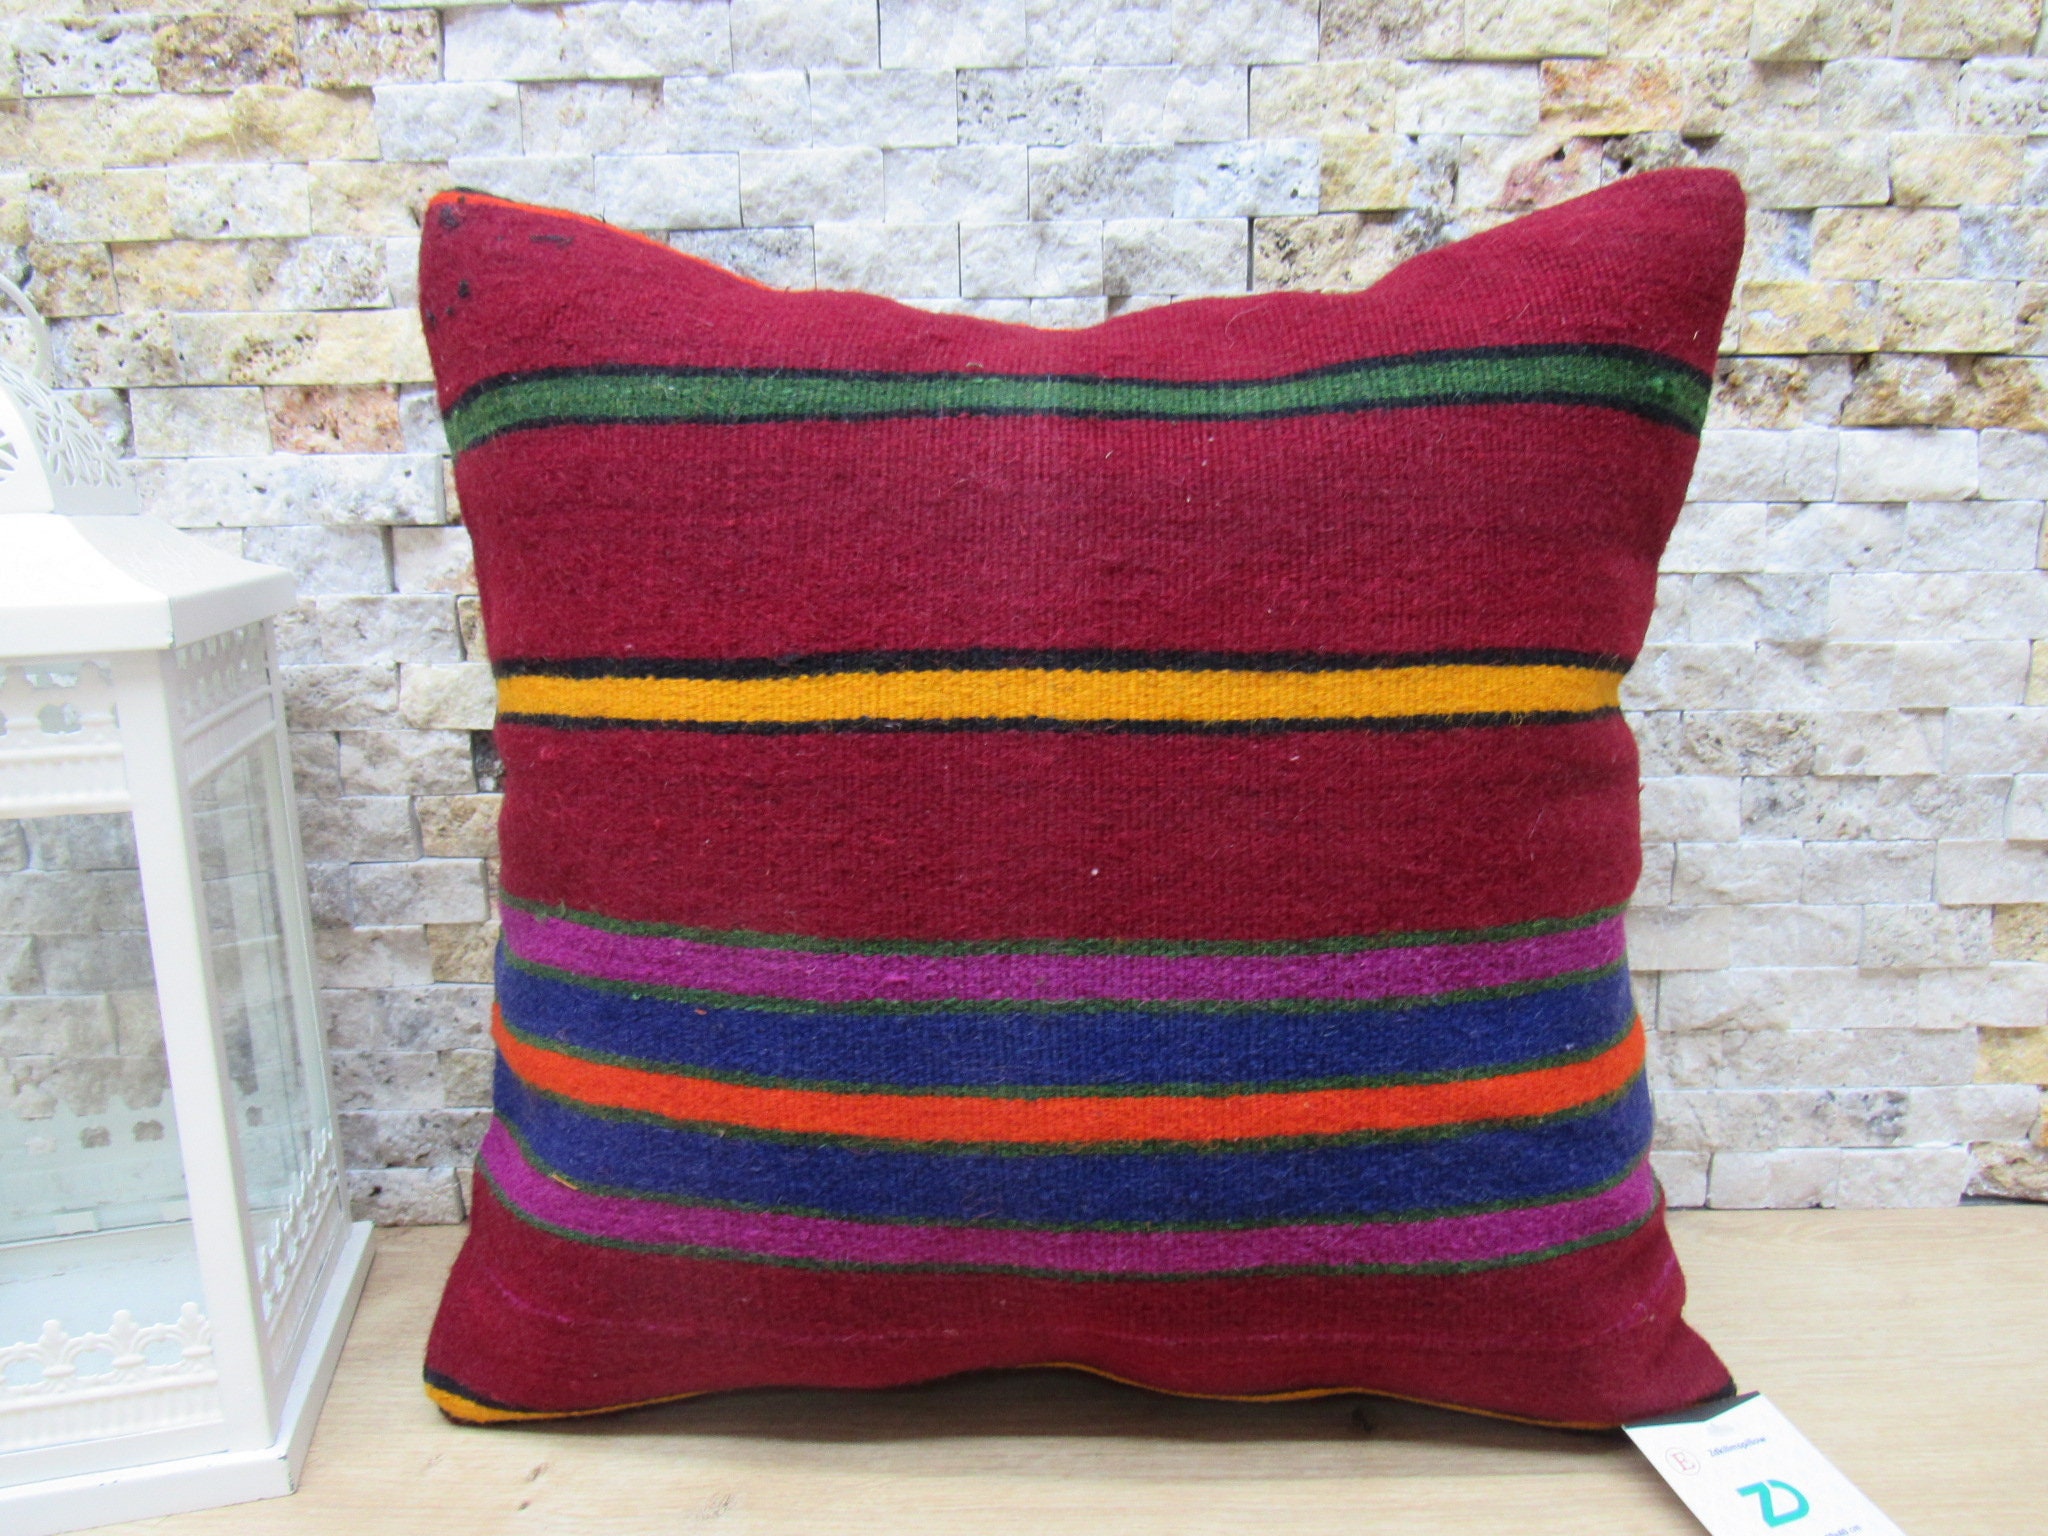 home decor pillow code 06695 striped kilim pillow coastal pillow anatolian kilim pillow 16x16 cushion cover throw pillow